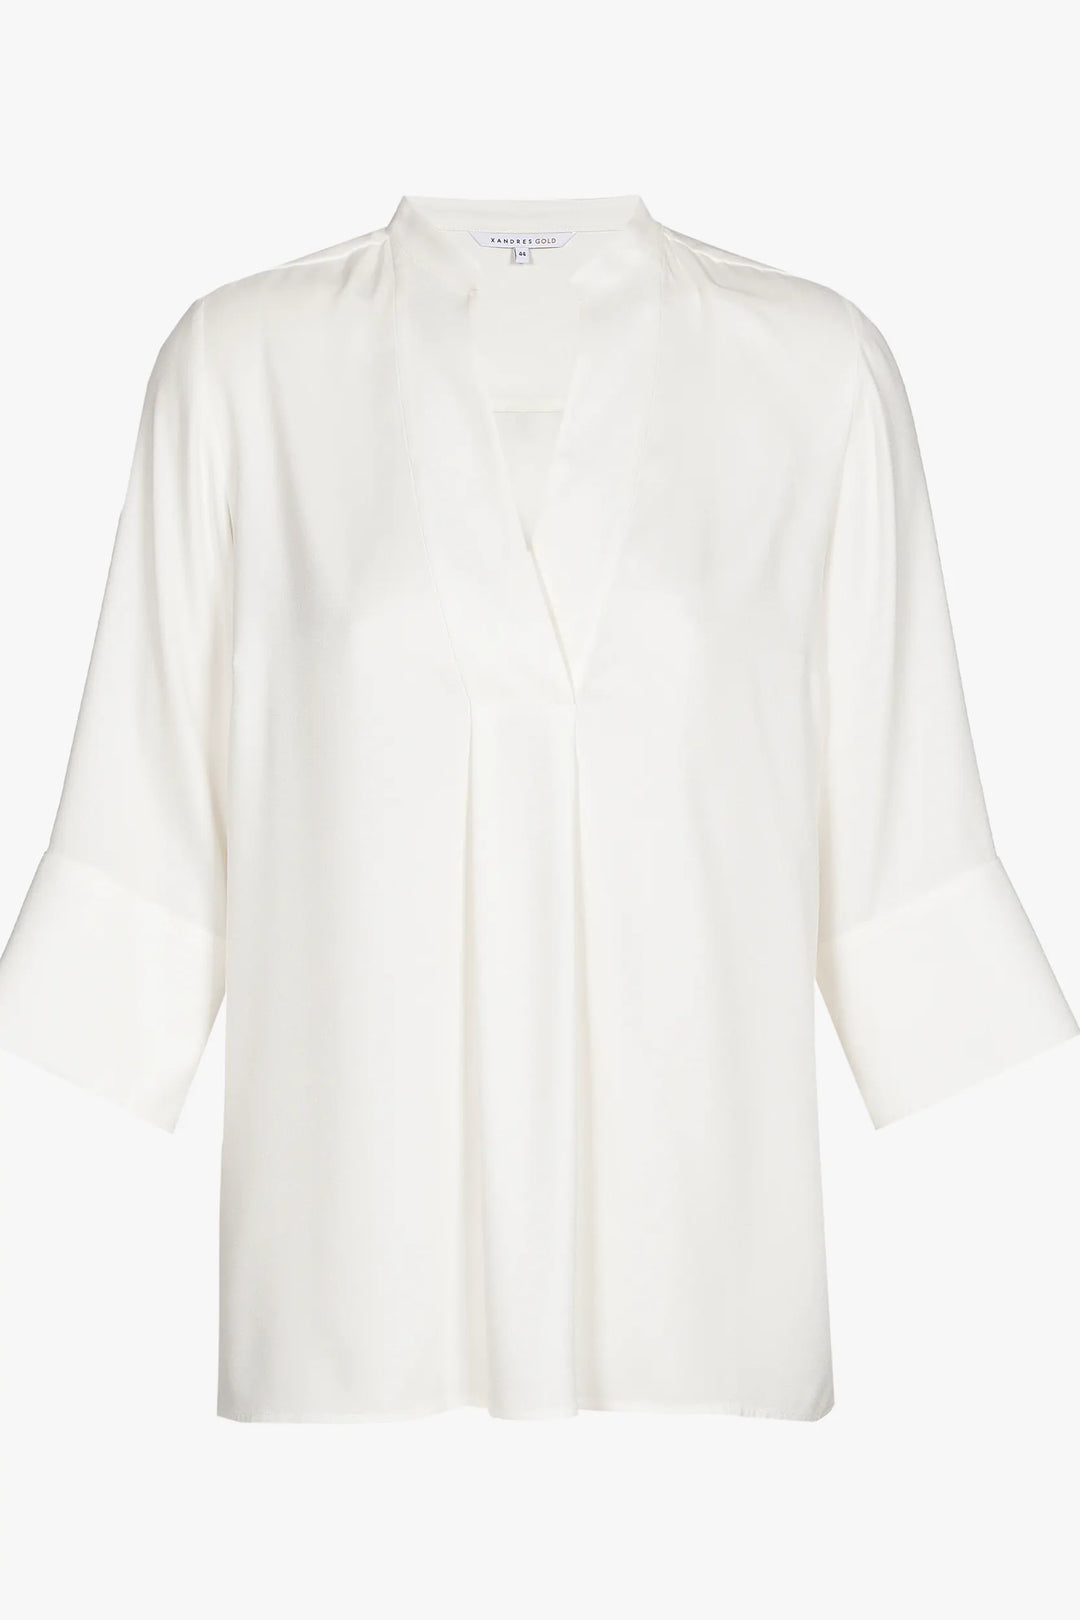 ecru blouse met v-hals - xandres - - grote maten - dameskleding - kledingwinkel - herent - leuven